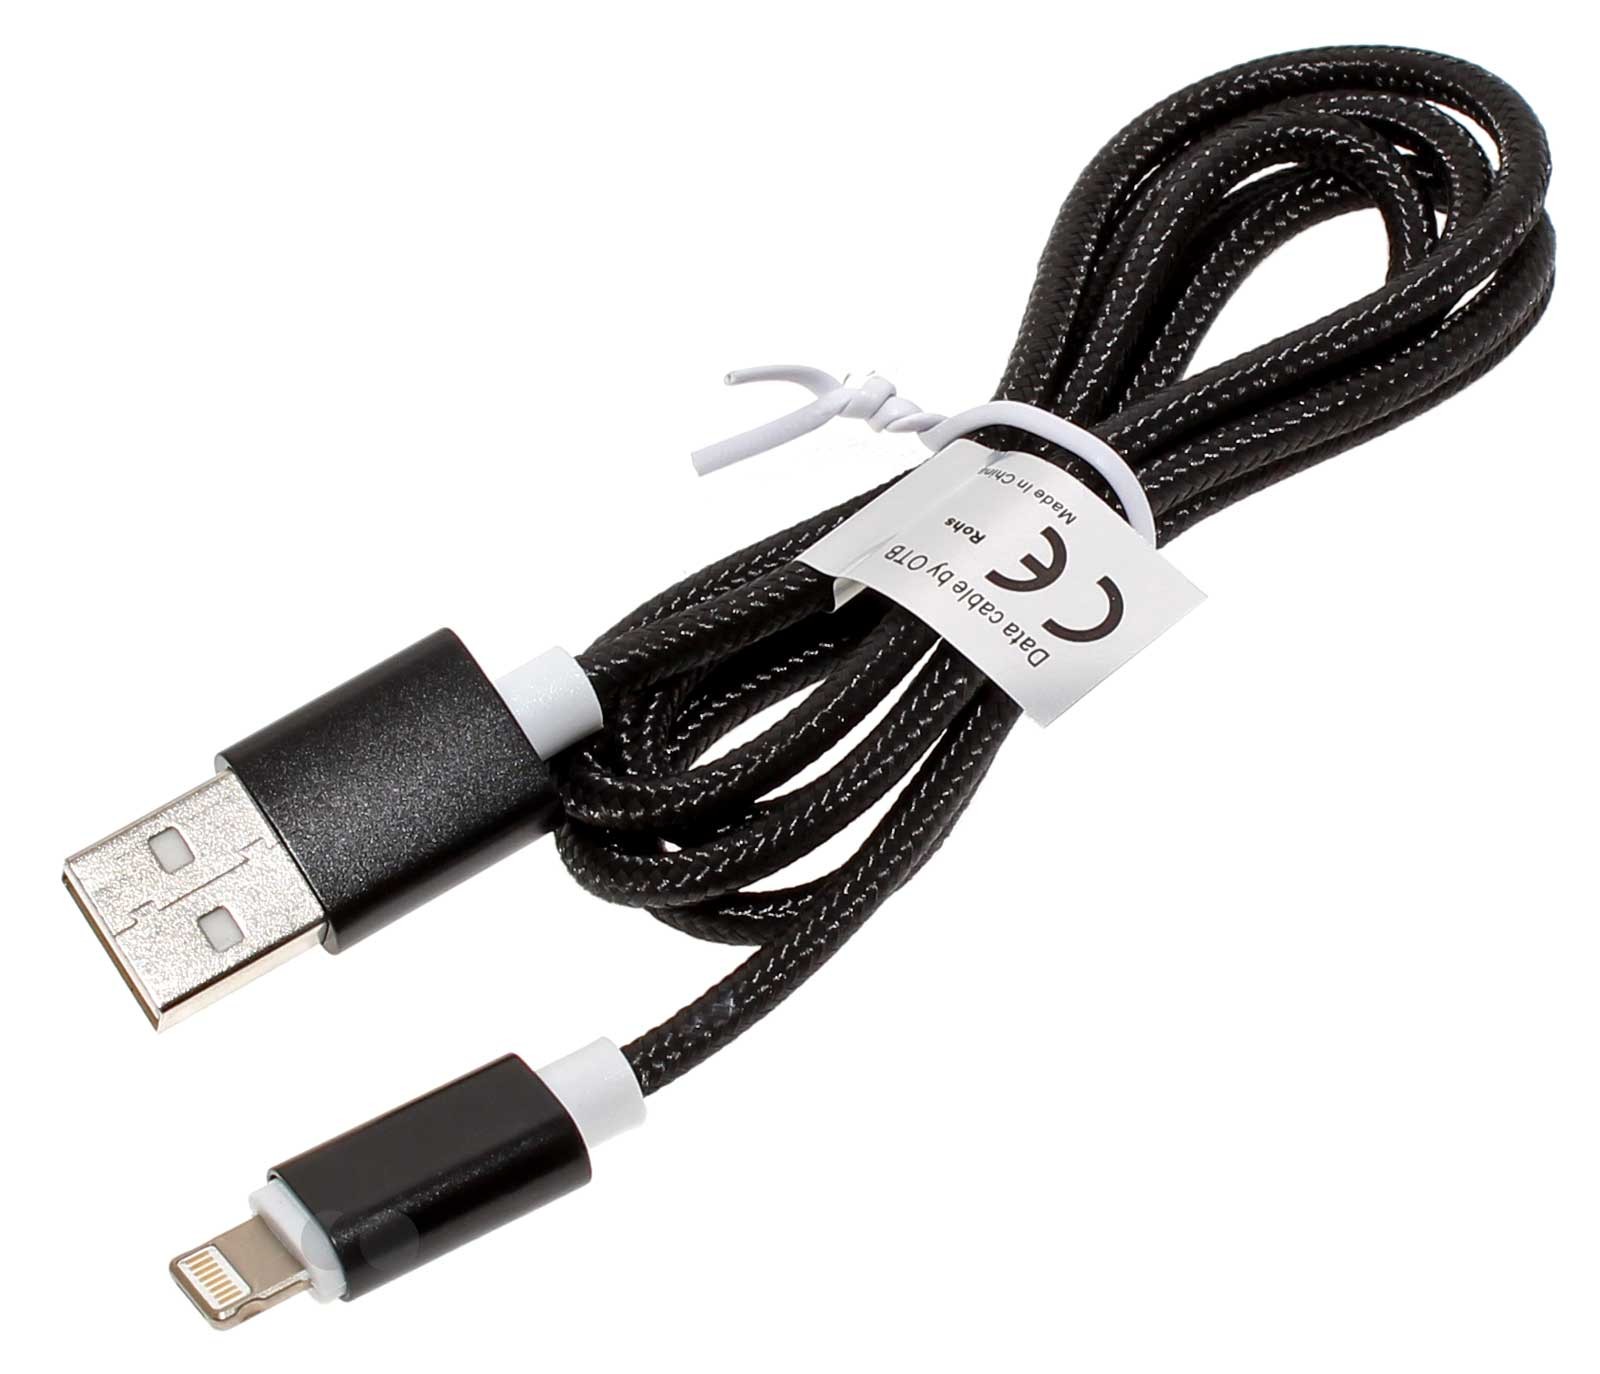 USB-Datenkabel (USB 2.0) zur Datenübertragung zwischen Smartphone, Handy und PC und weiteren kompatiblen Geräten, der innovative 2in1 Kombistecker vereint 2 Steckertypen, den iPhone Stecker und den Micro-USB-Stecker